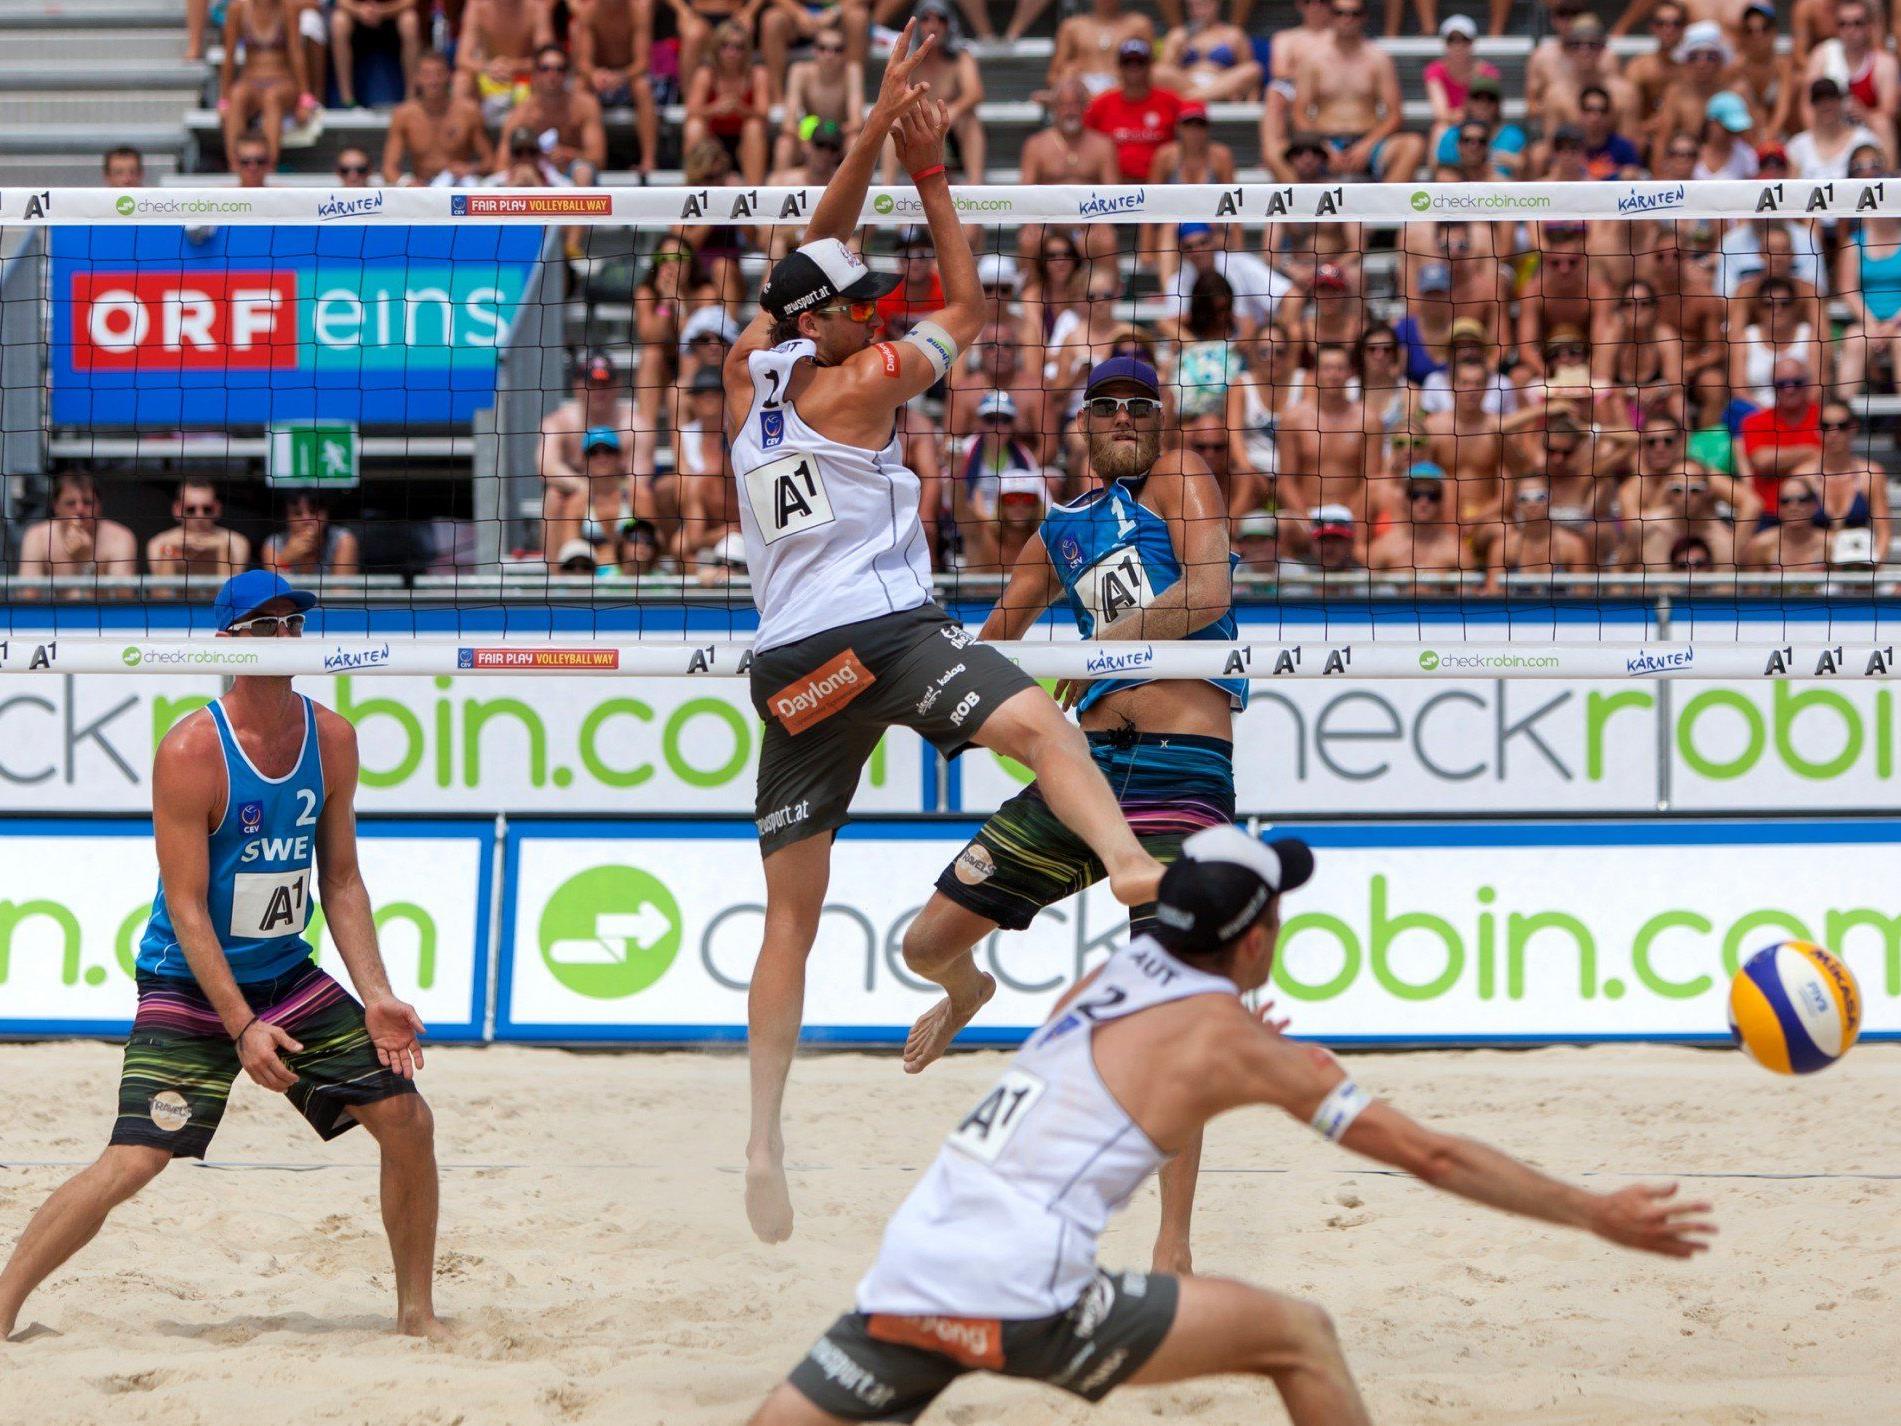 Beach-Volleyball: Huber/Seidl mit 1. Sieg - Jirak/Plesiutschnig out